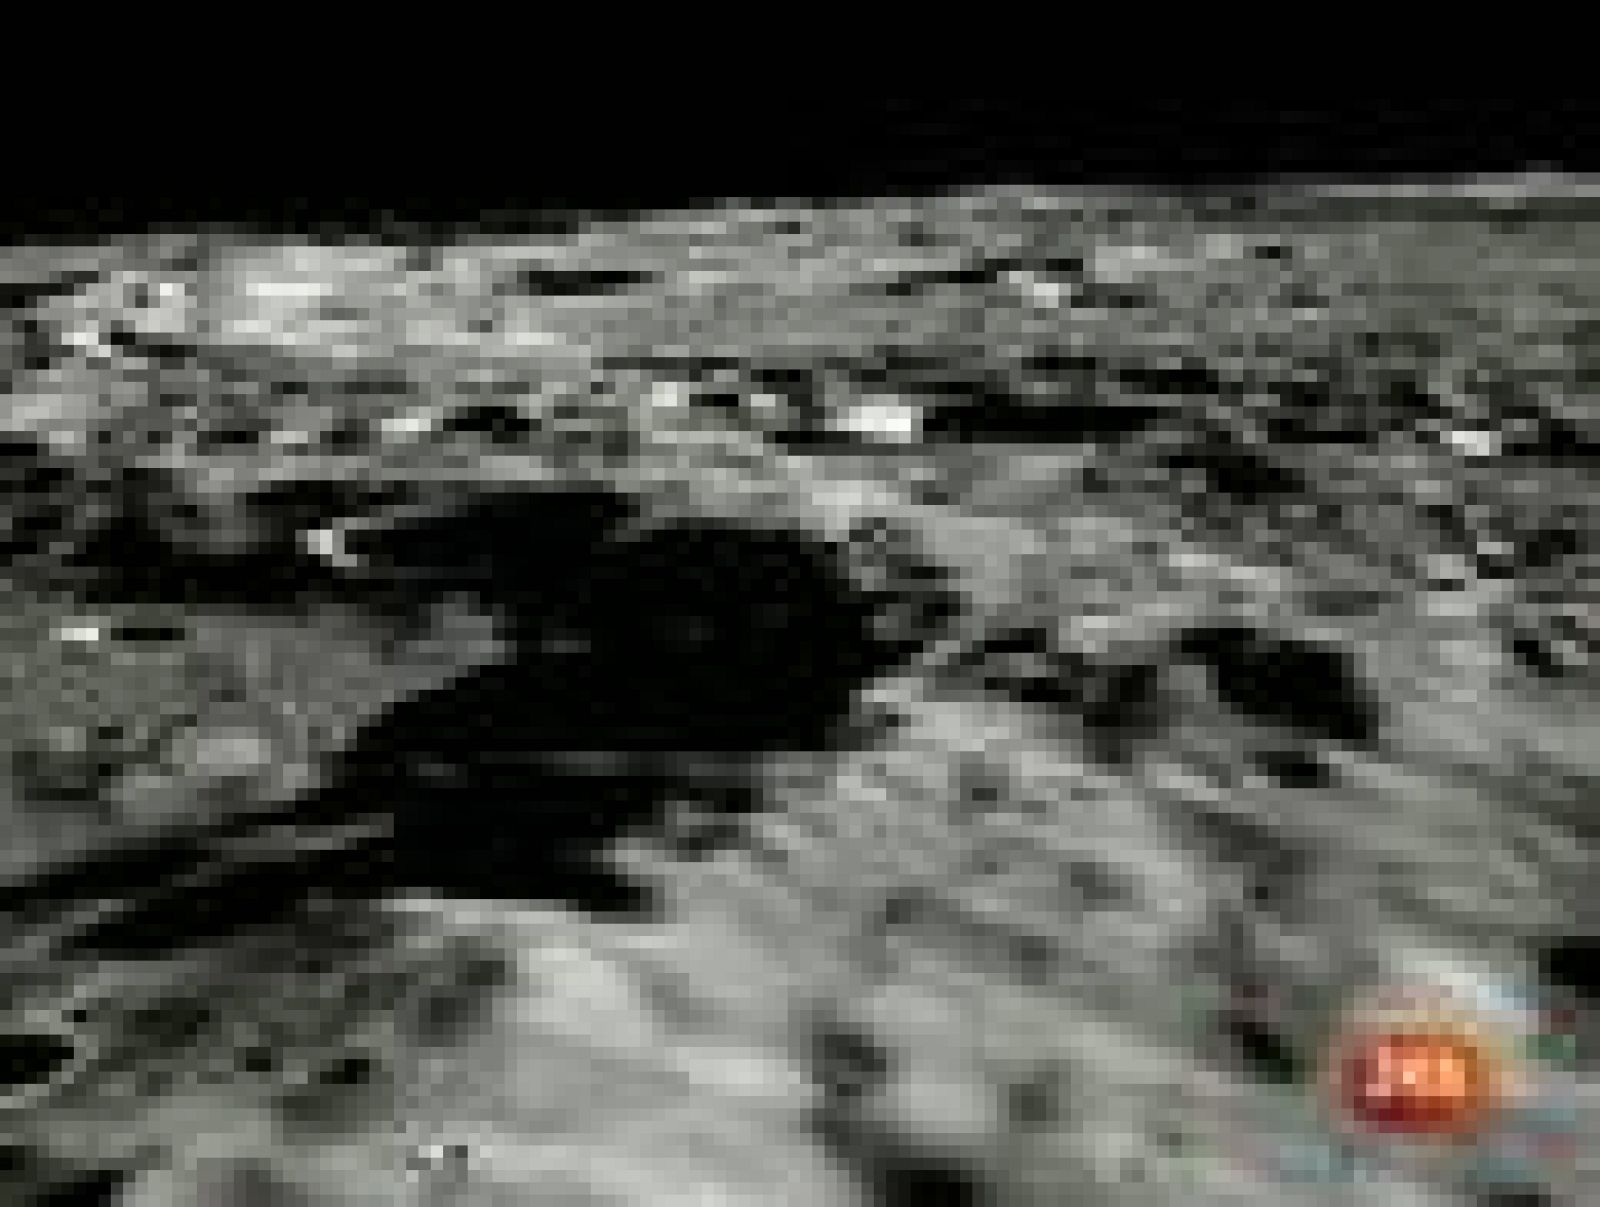 La NASA publica nuevas imágenes de los lugares de alunizaje de las misiones Apolo